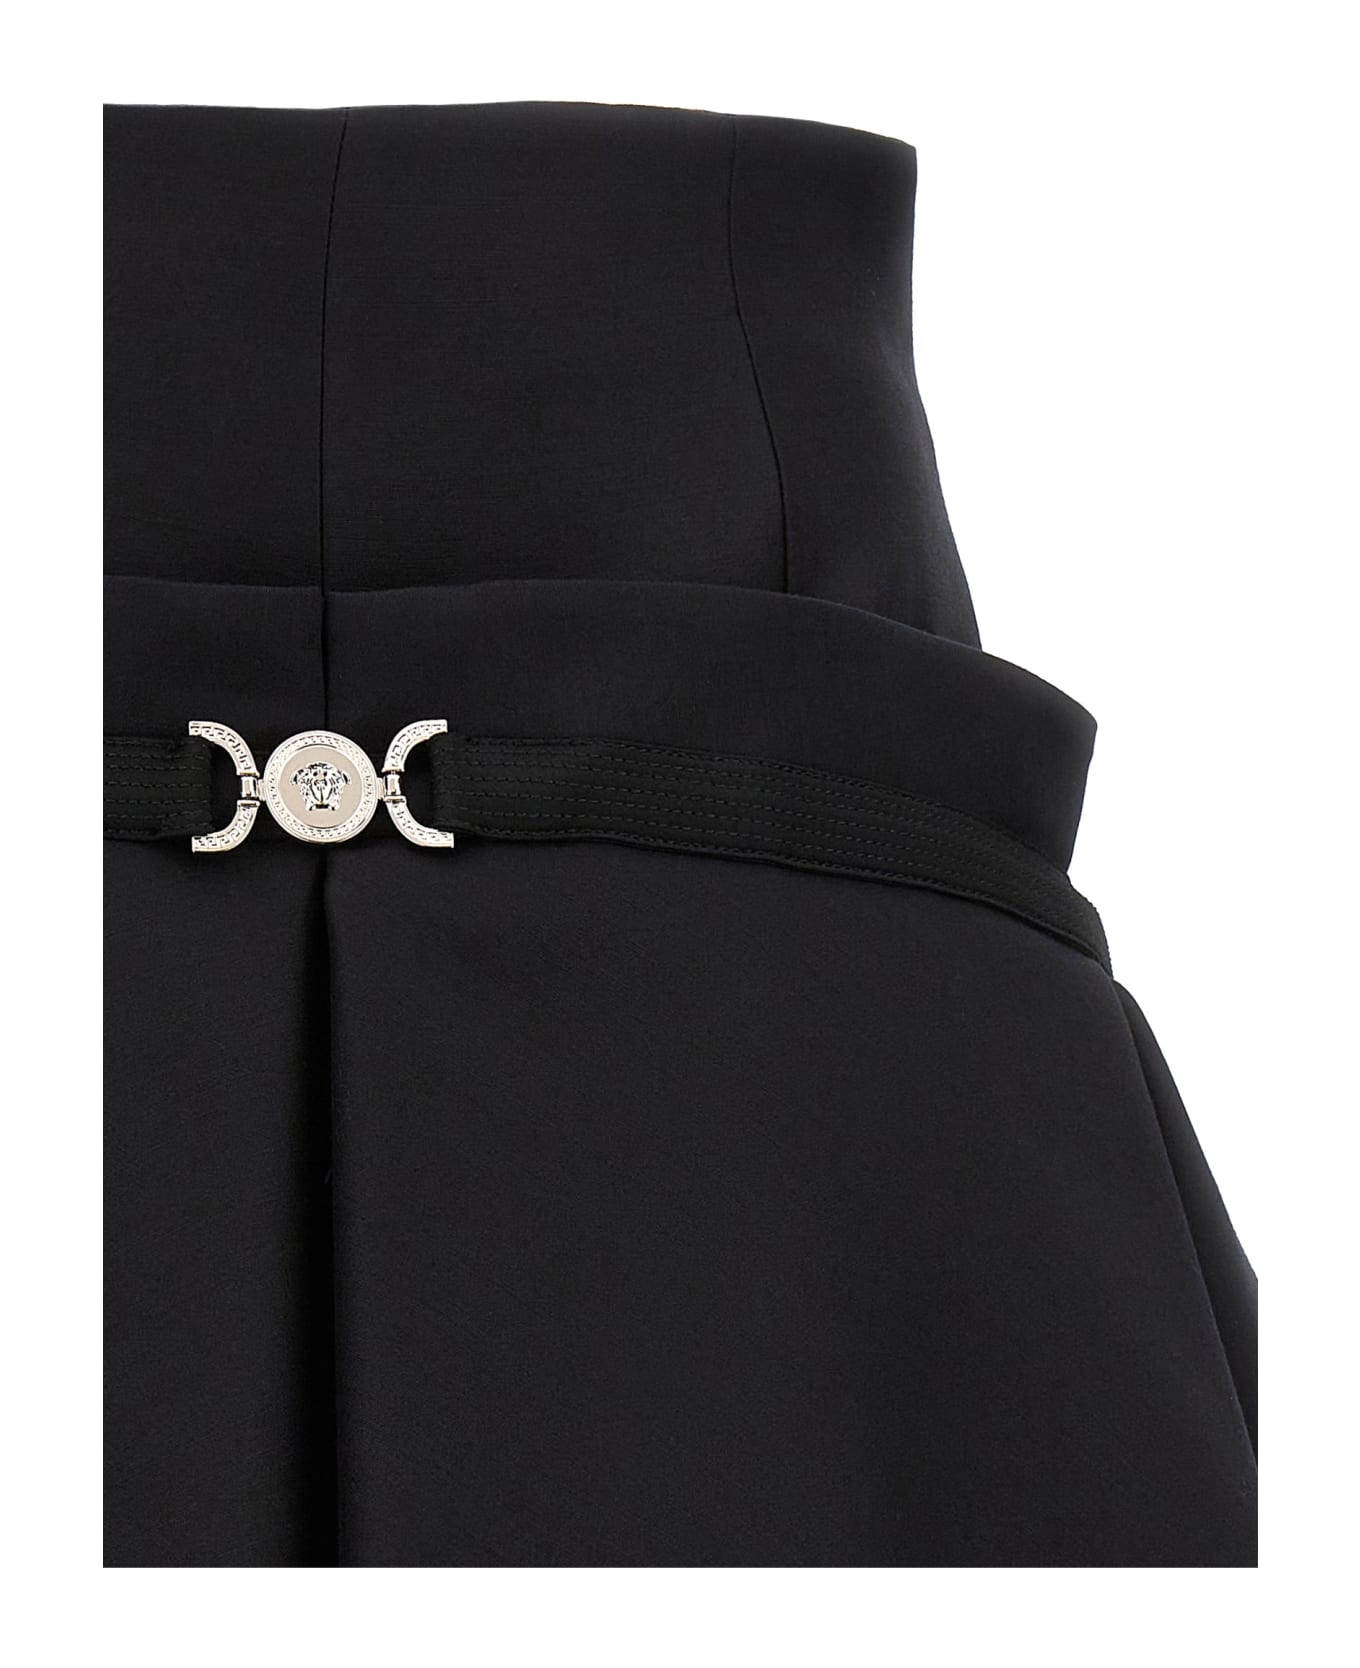 Versace 'medusa '95' Skirt - Black